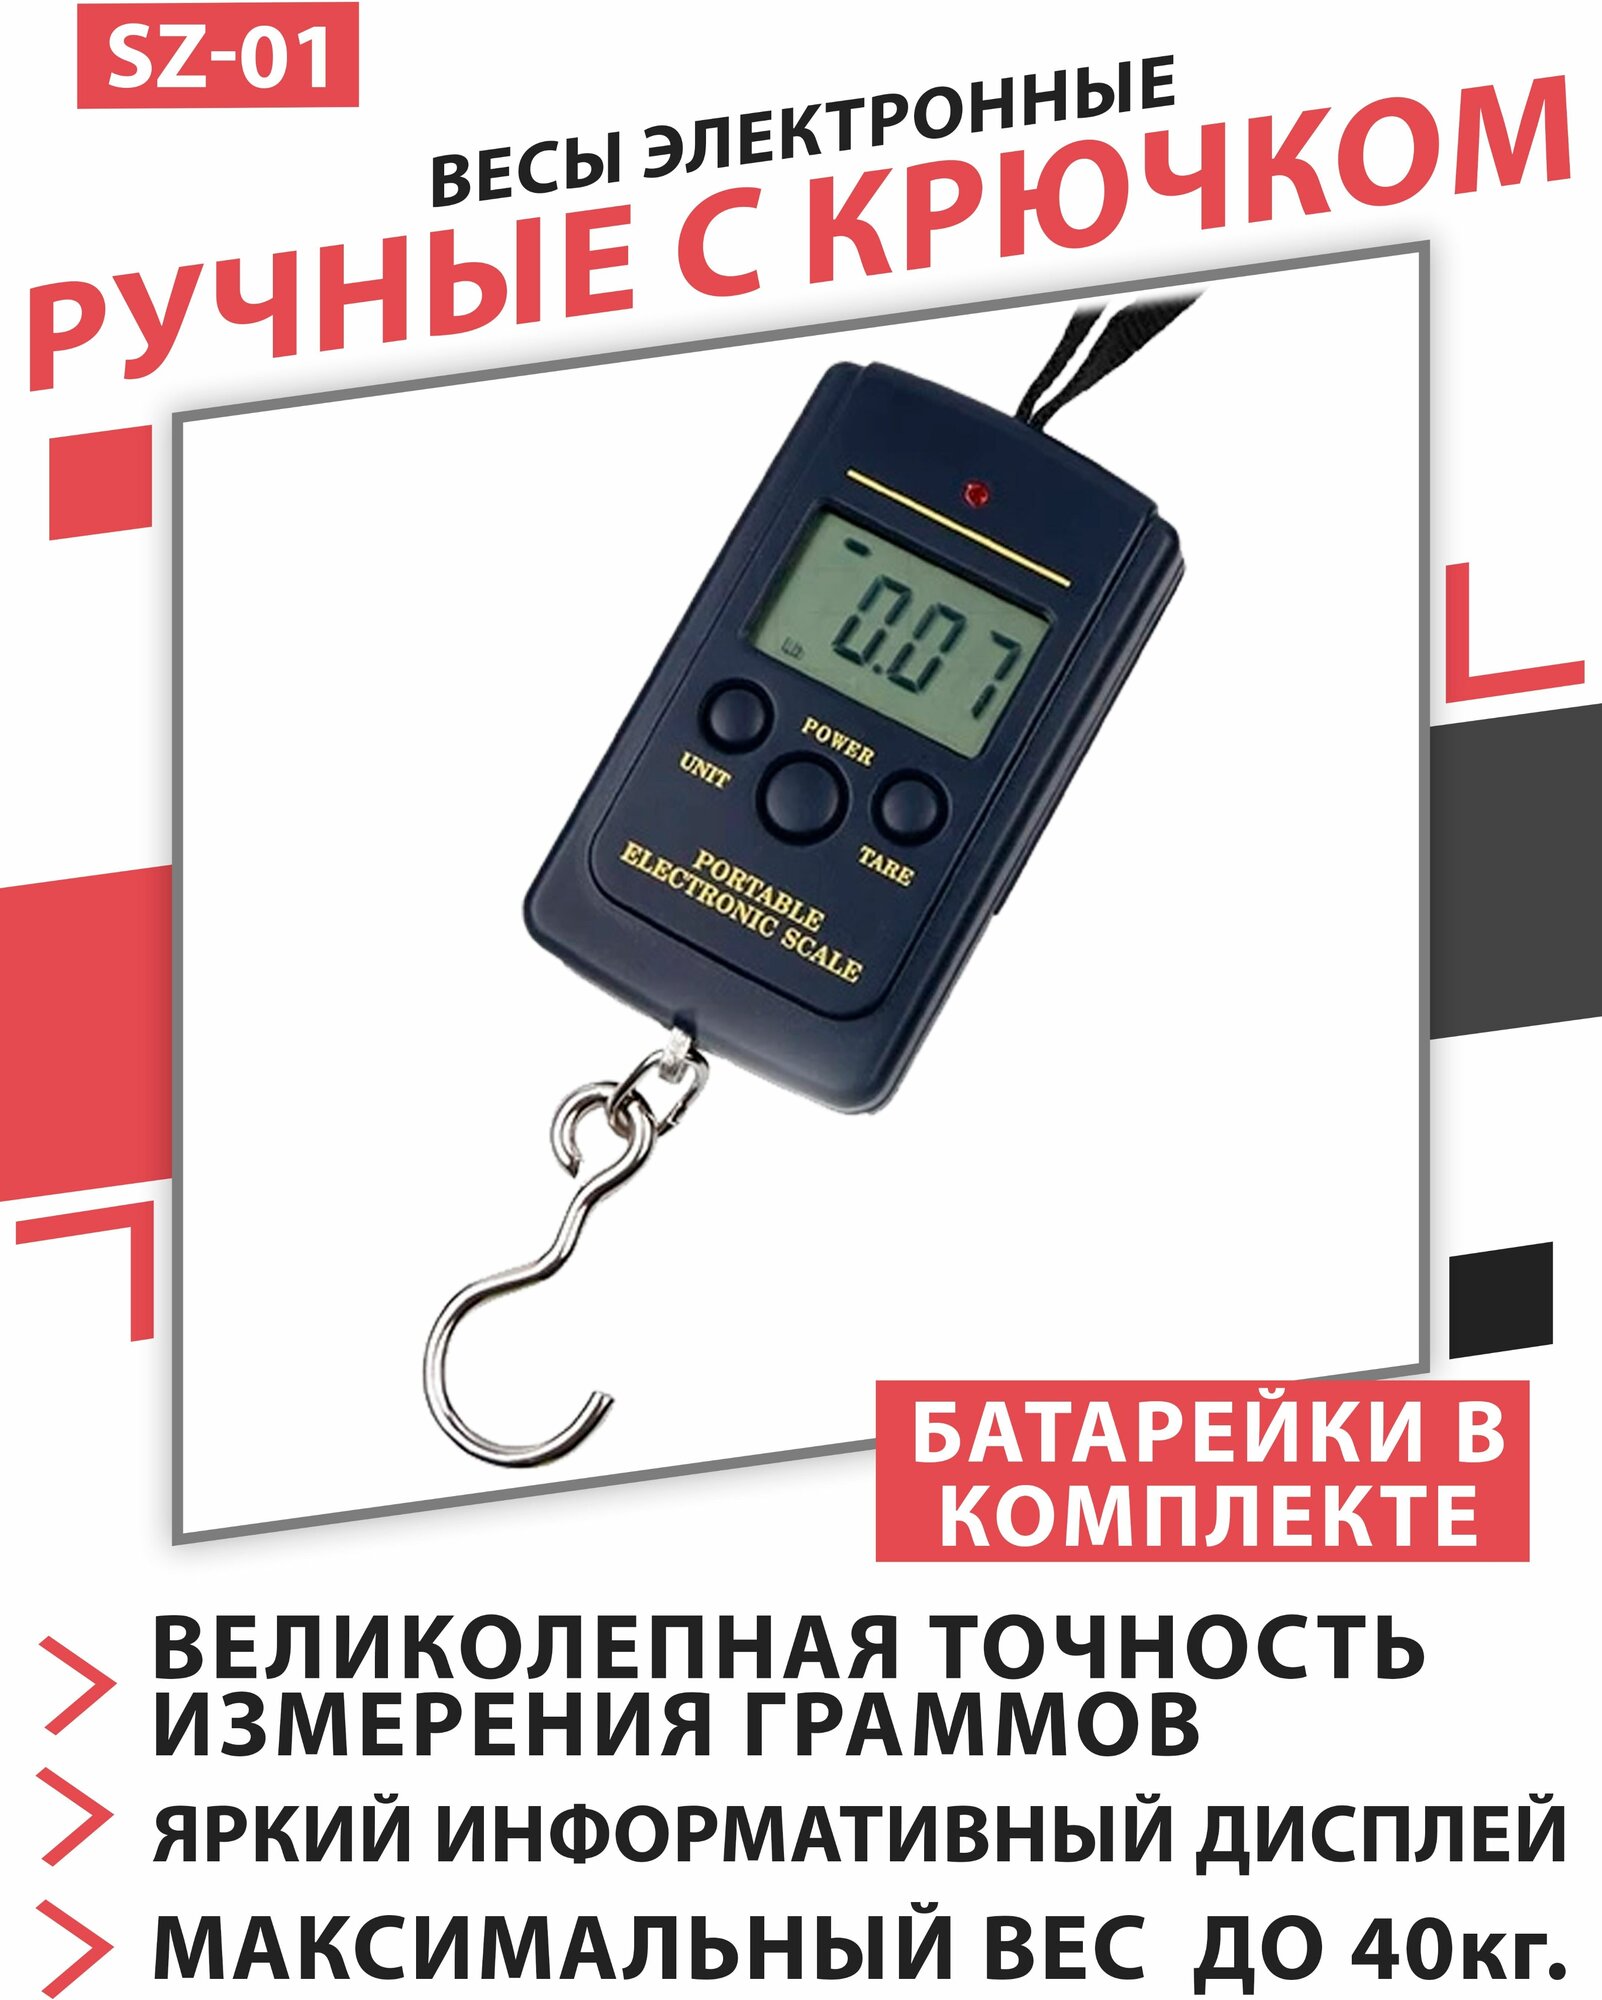 Электронные весы безмен SZ-01 40kg/10g с крючком (для рыбалки и охоты)